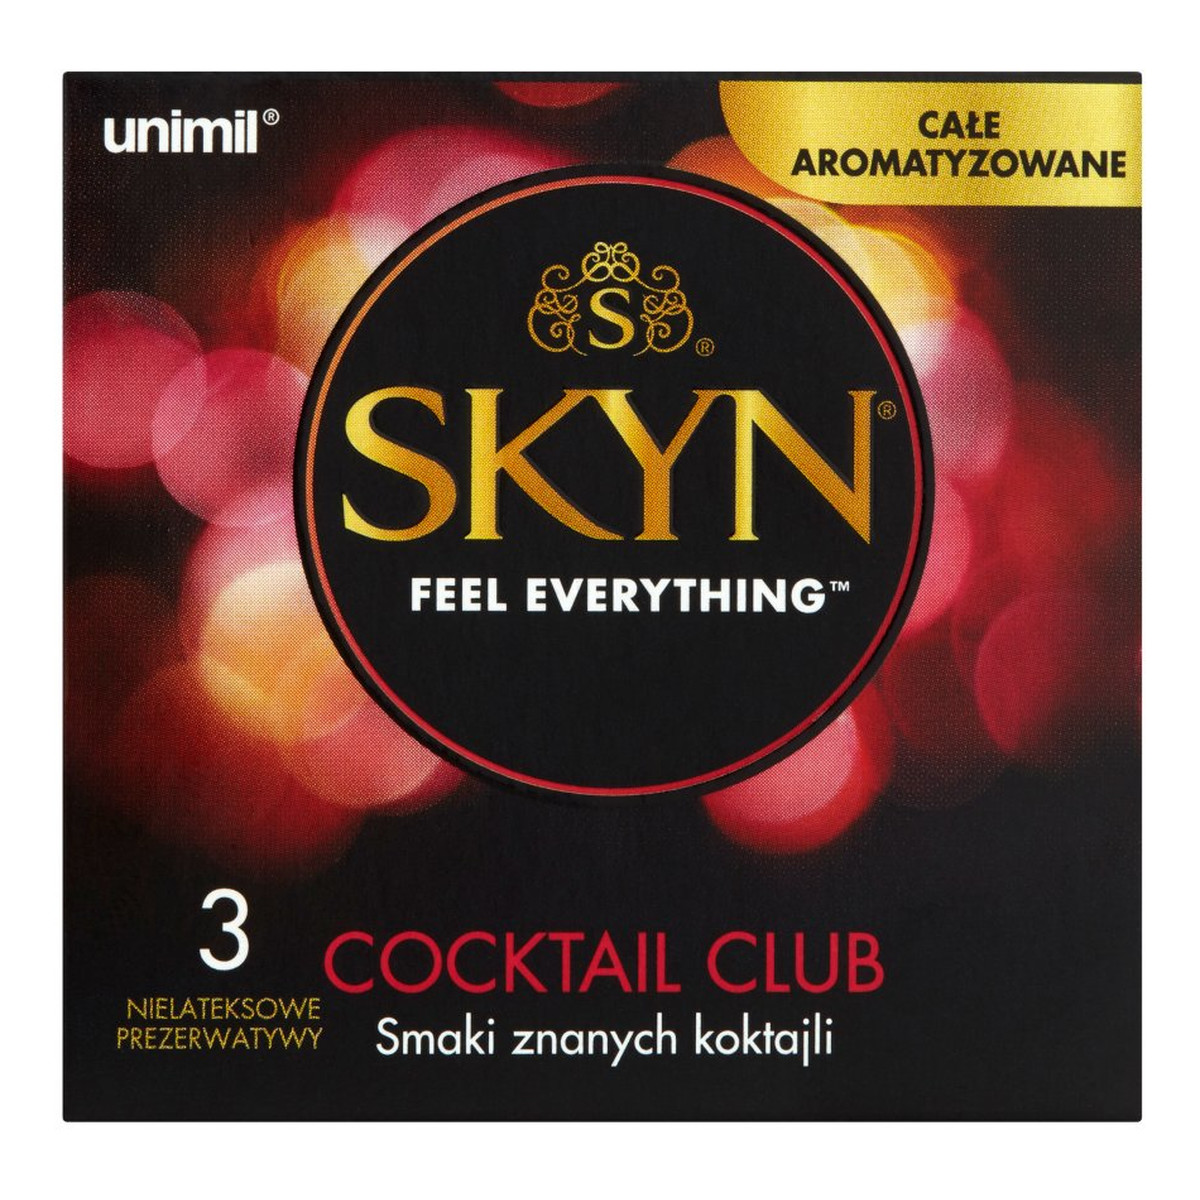 Unimil Skyn Feel Everything Cocktail Club Nielateksowe prezerwatywy 3szt